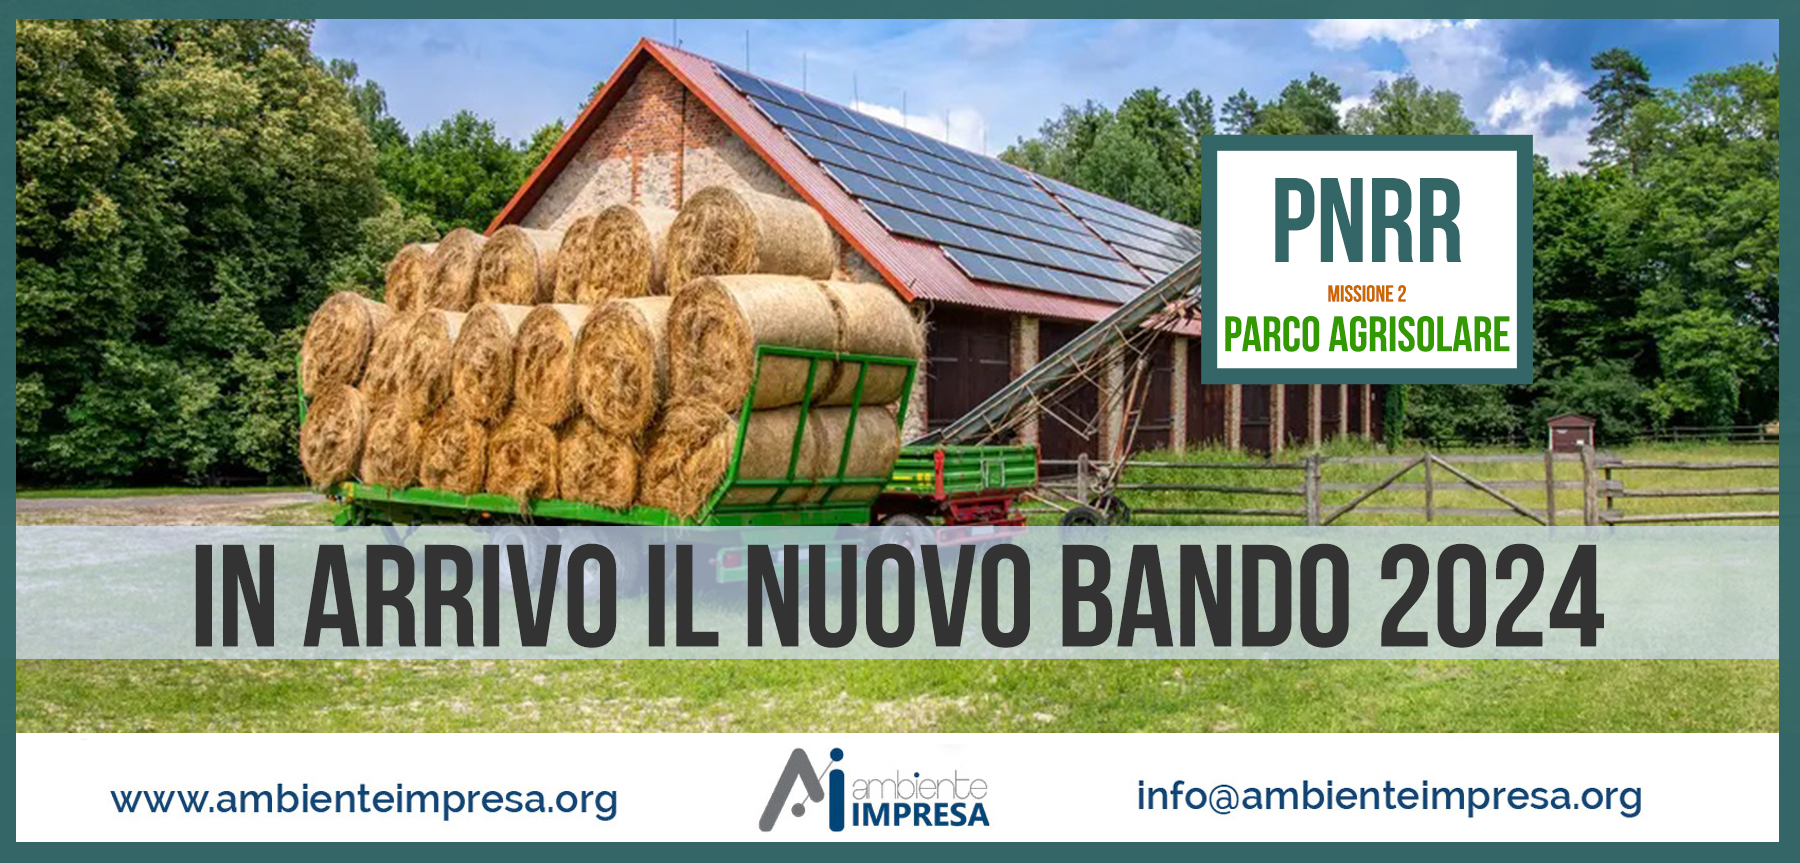 PARCO AGRISOLARE - Ambiente Impresa srl - Cagliari